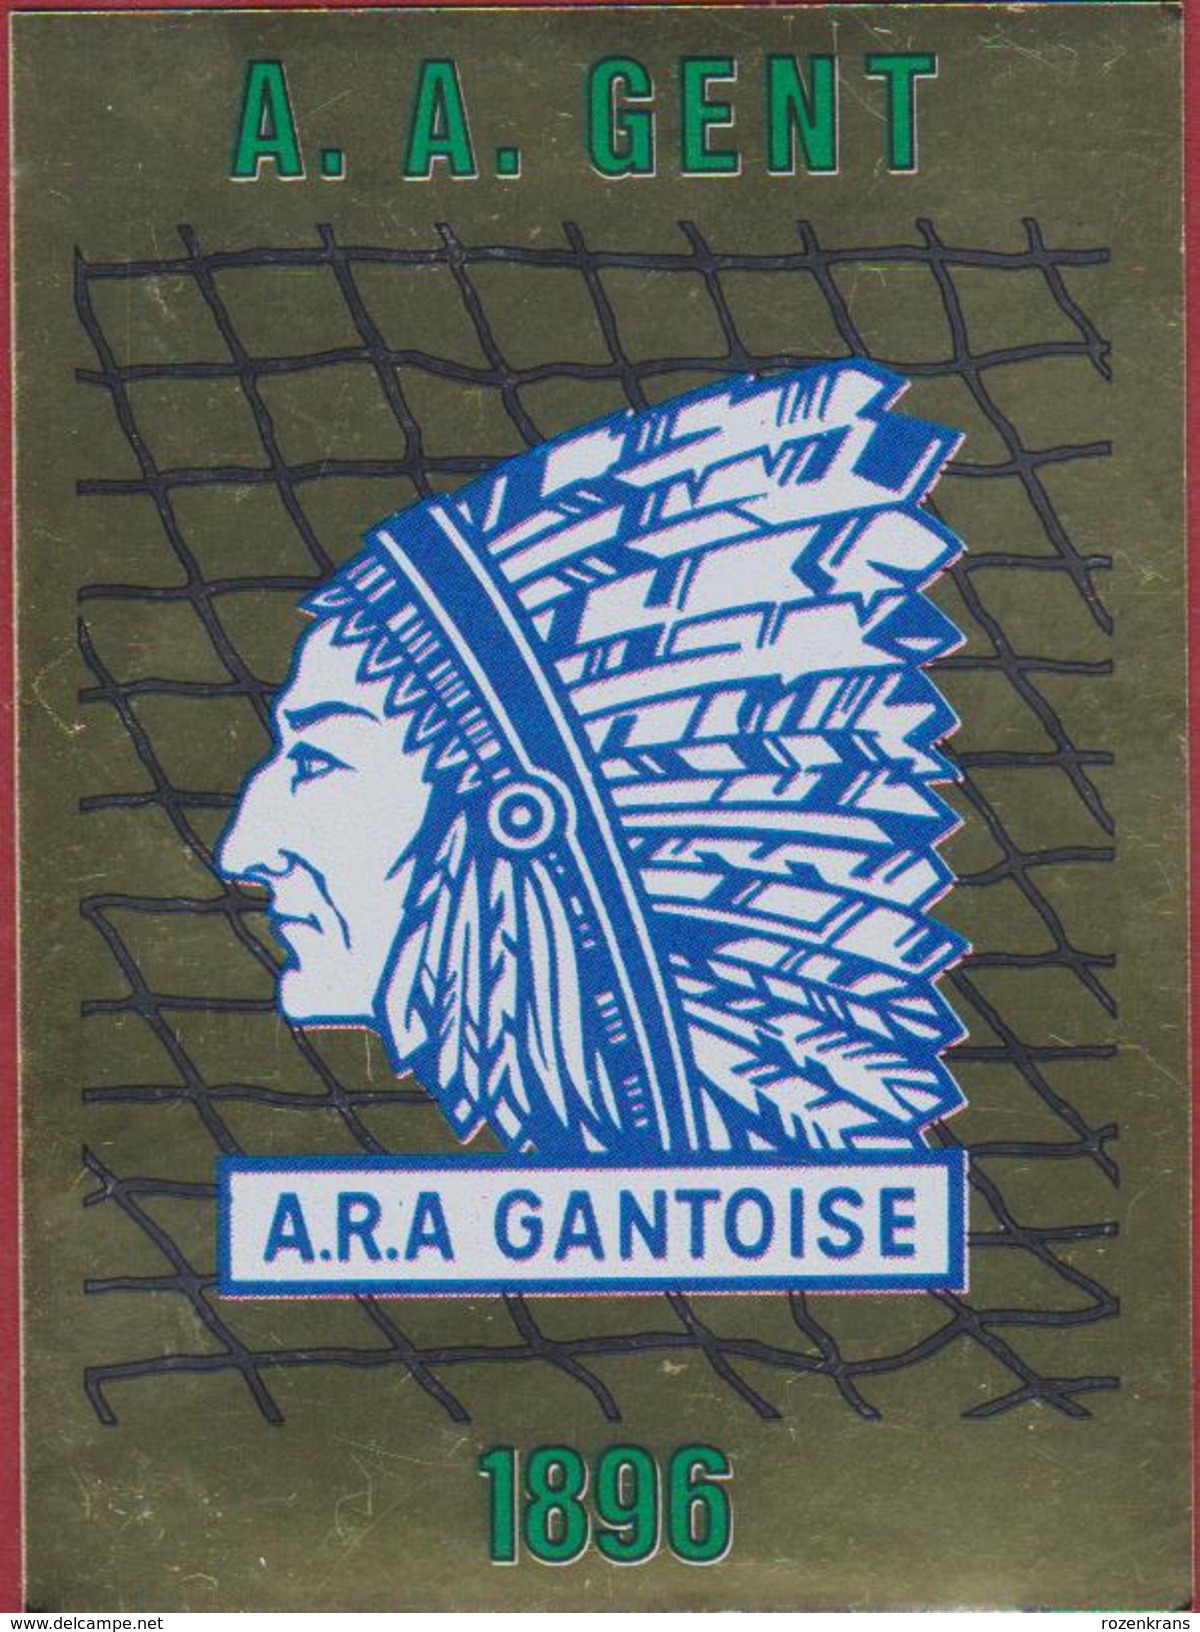 Panini Football 86 Voetbal Belgie Belgique 1986 Sticker AA KAA Gent La Gantoise Nr. 134 LOGO De Buffalo's - Sports